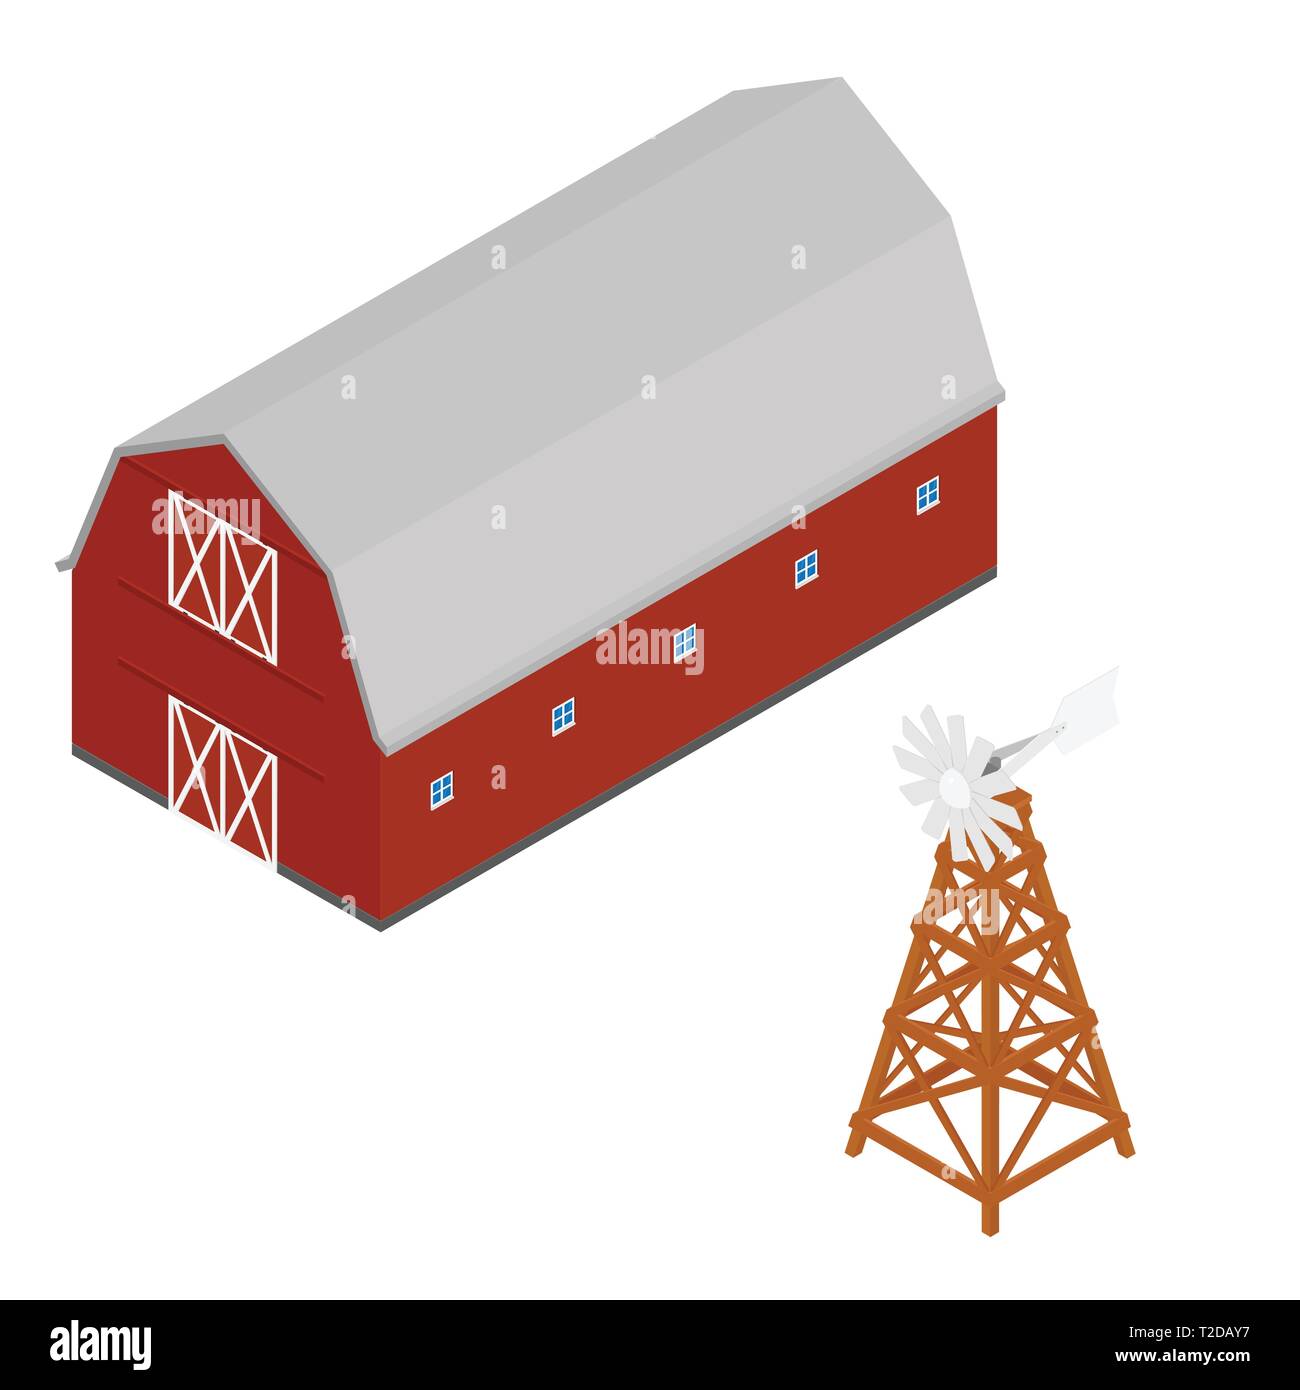 Isometrische rote Scheune und Wasser mit Kohlensäure Windmühle. Landwirtschaftliche Gebäude isoliert auf weißem Hintergrund Stock Vektor